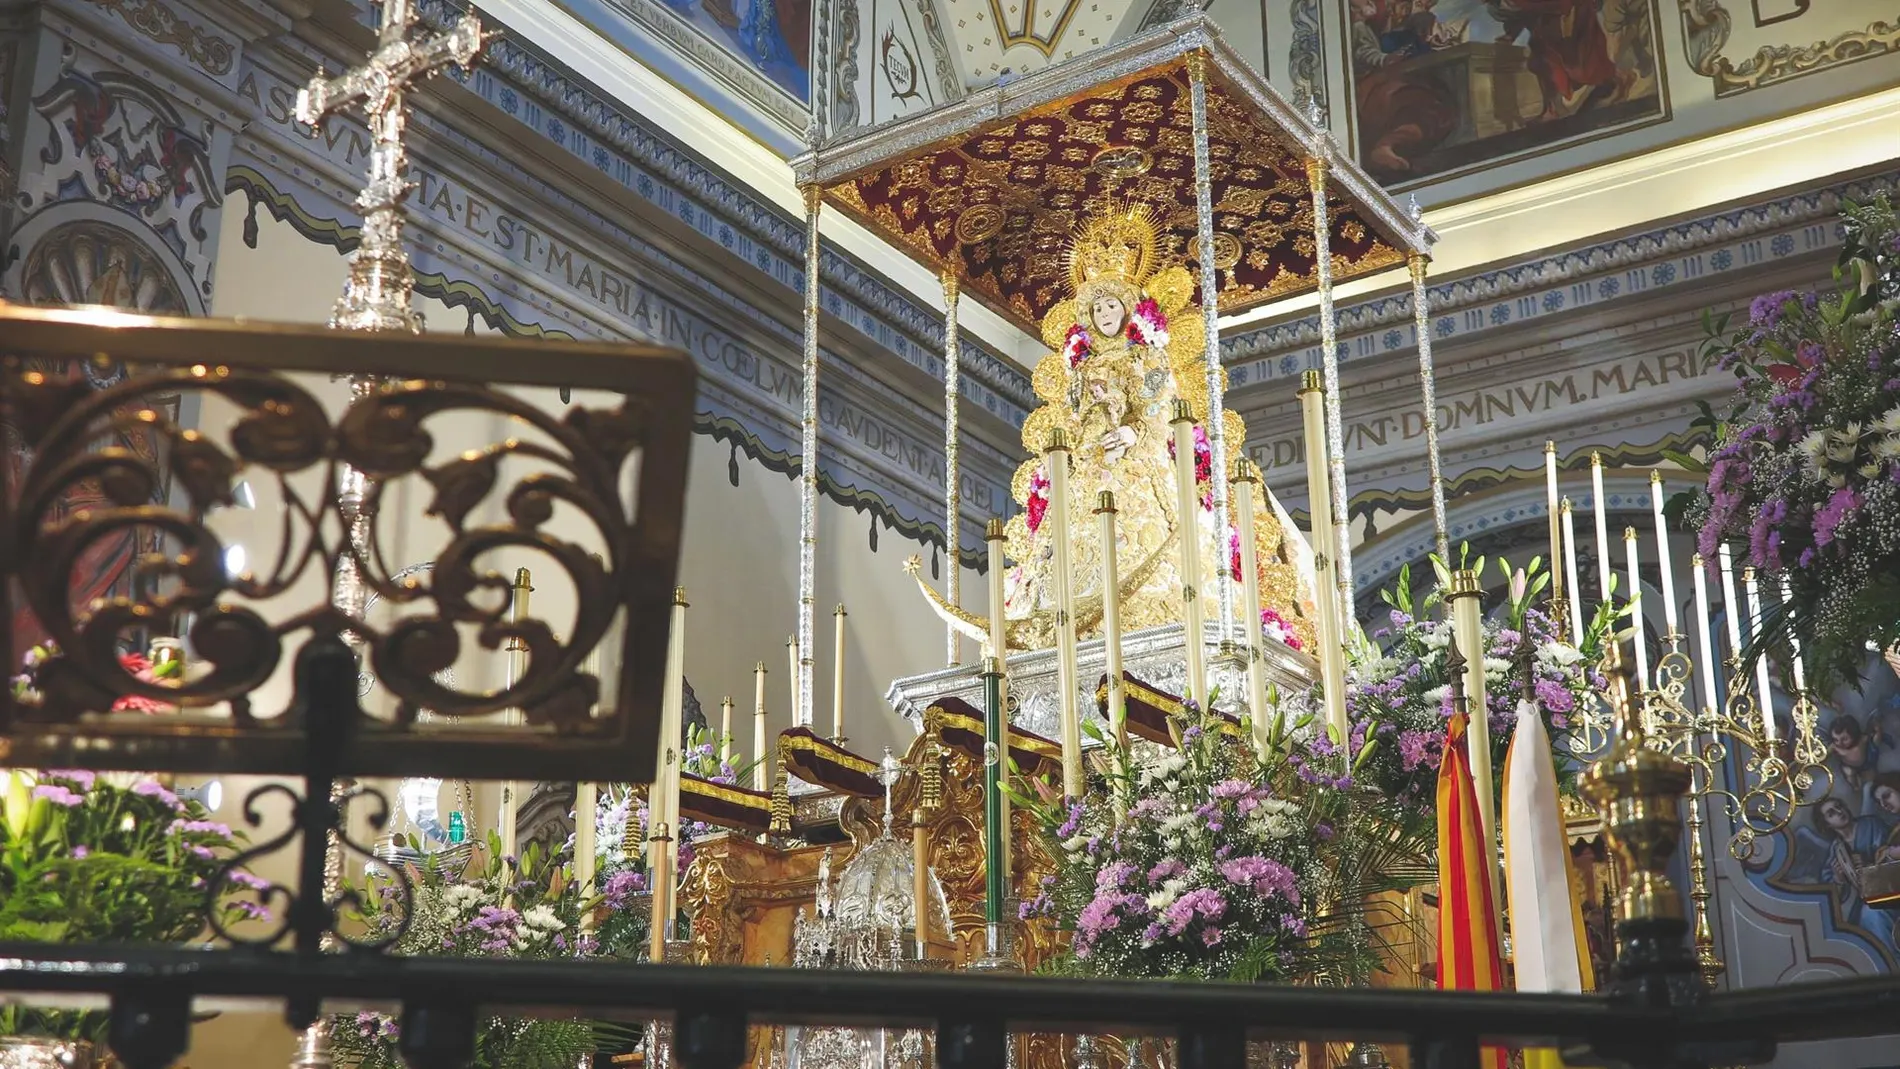 La Virgen del Rocío regresará a su altar este viernes